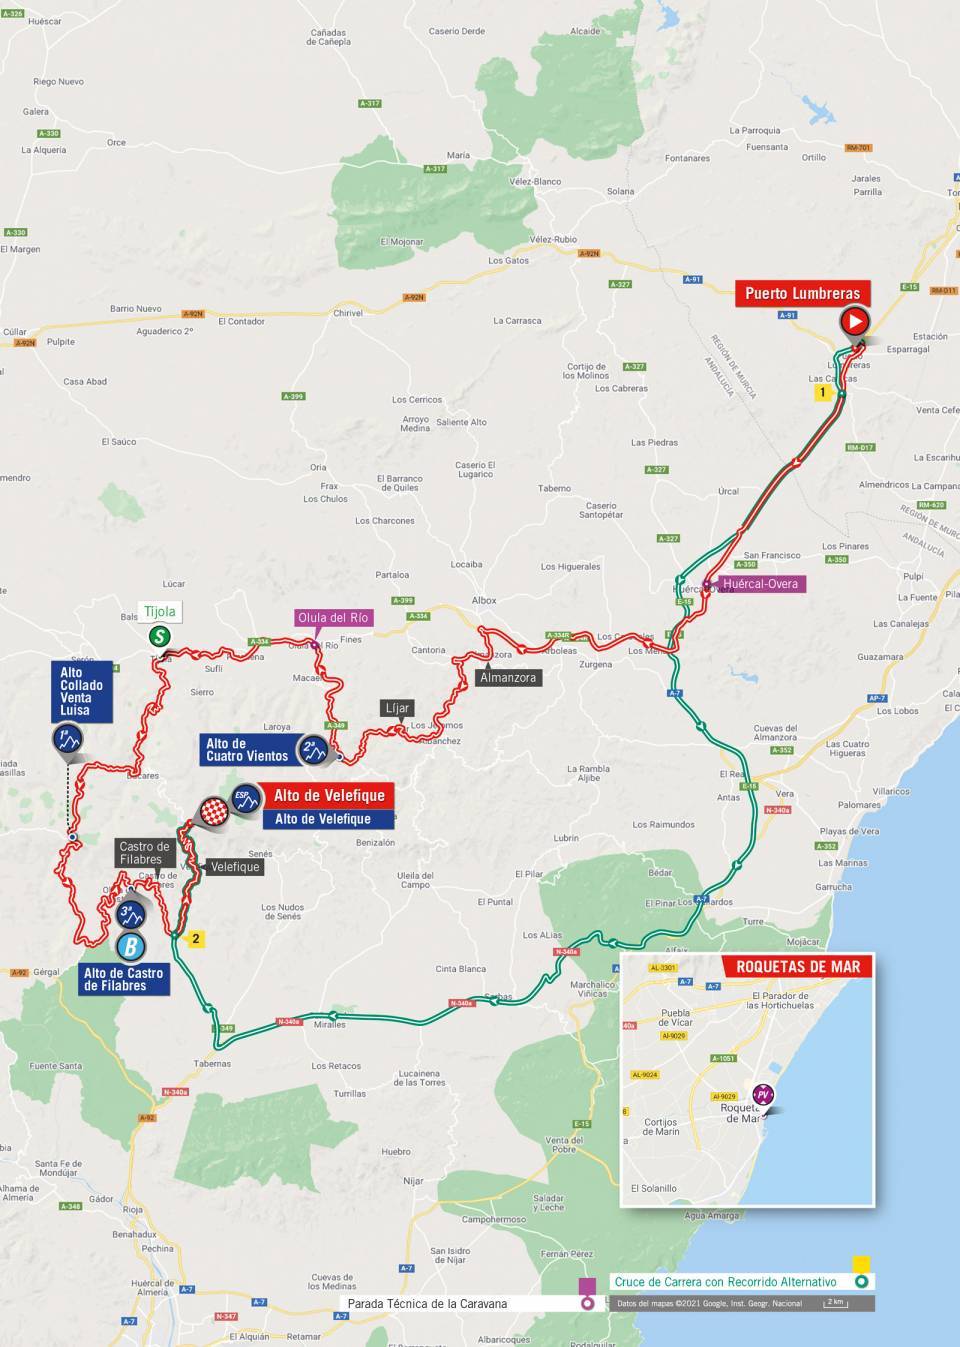 De route van vandaag (Bron: Vuelta a España)